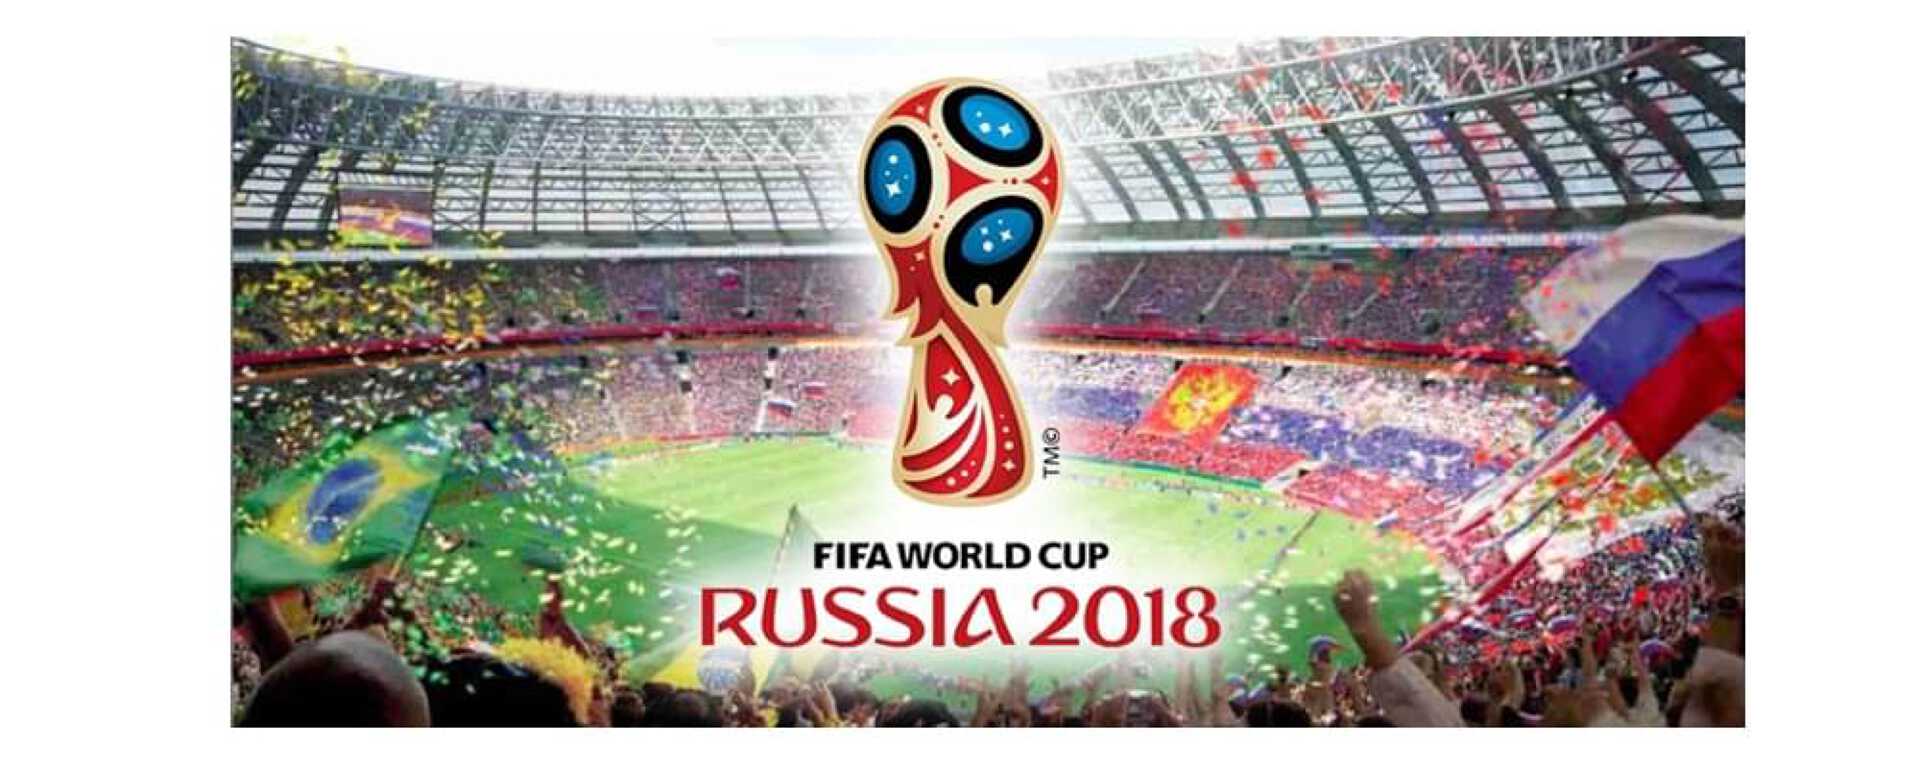 Affiche coupe du Monde FIFA 2018 en Russie avec le logo doré rouge bleu et noir